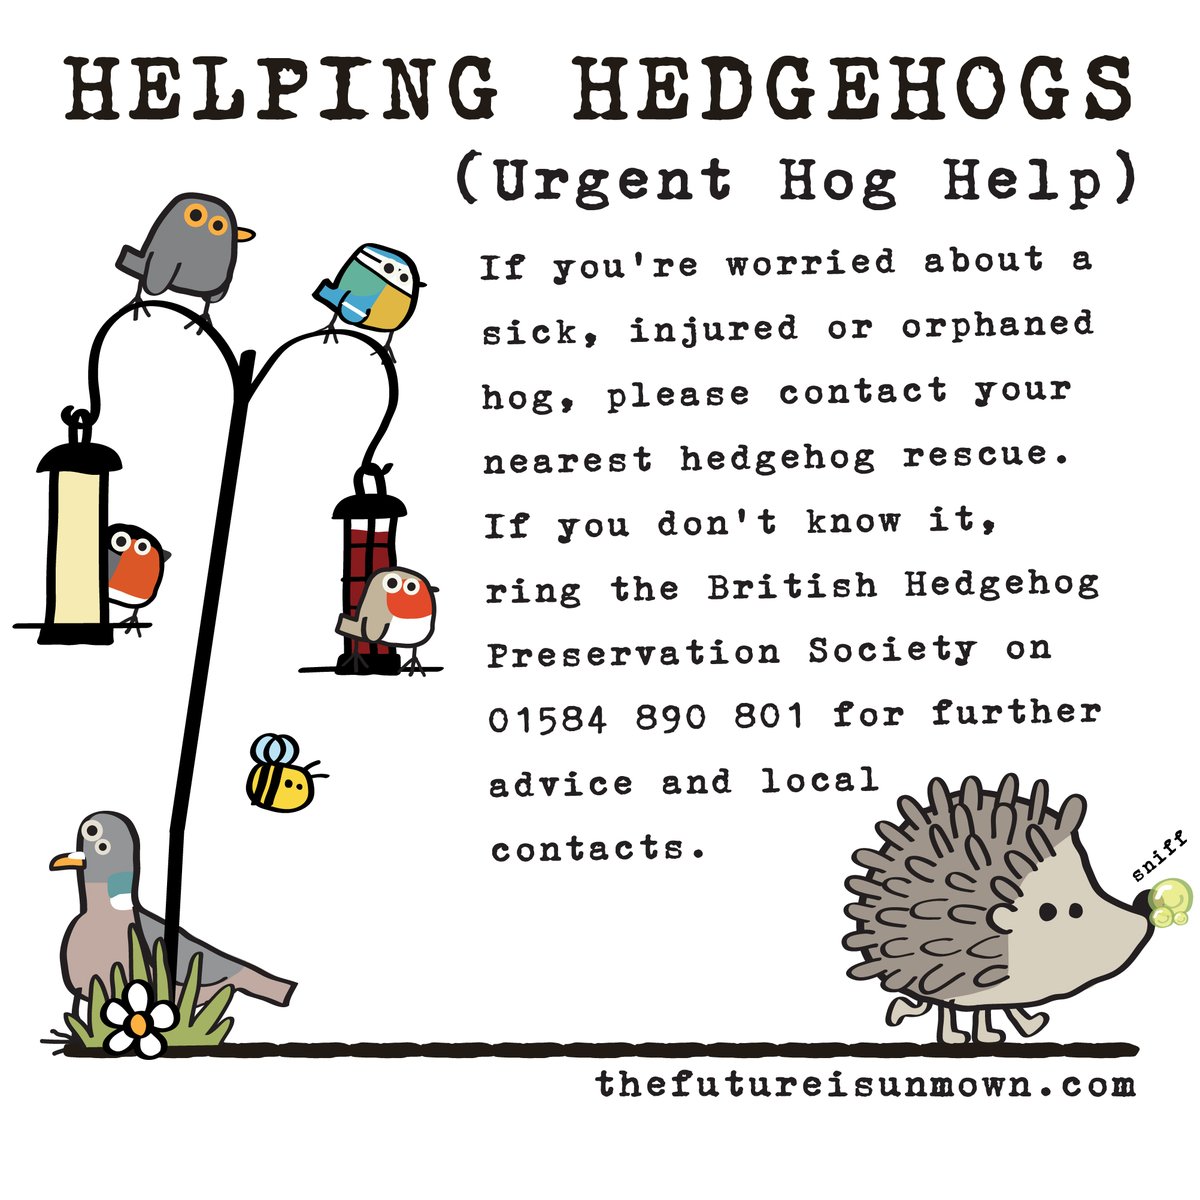 Just a handy reminder 🦔💚 #HelpingHedgehogs #wildlife #wildliifegardens #thefutureisunmown